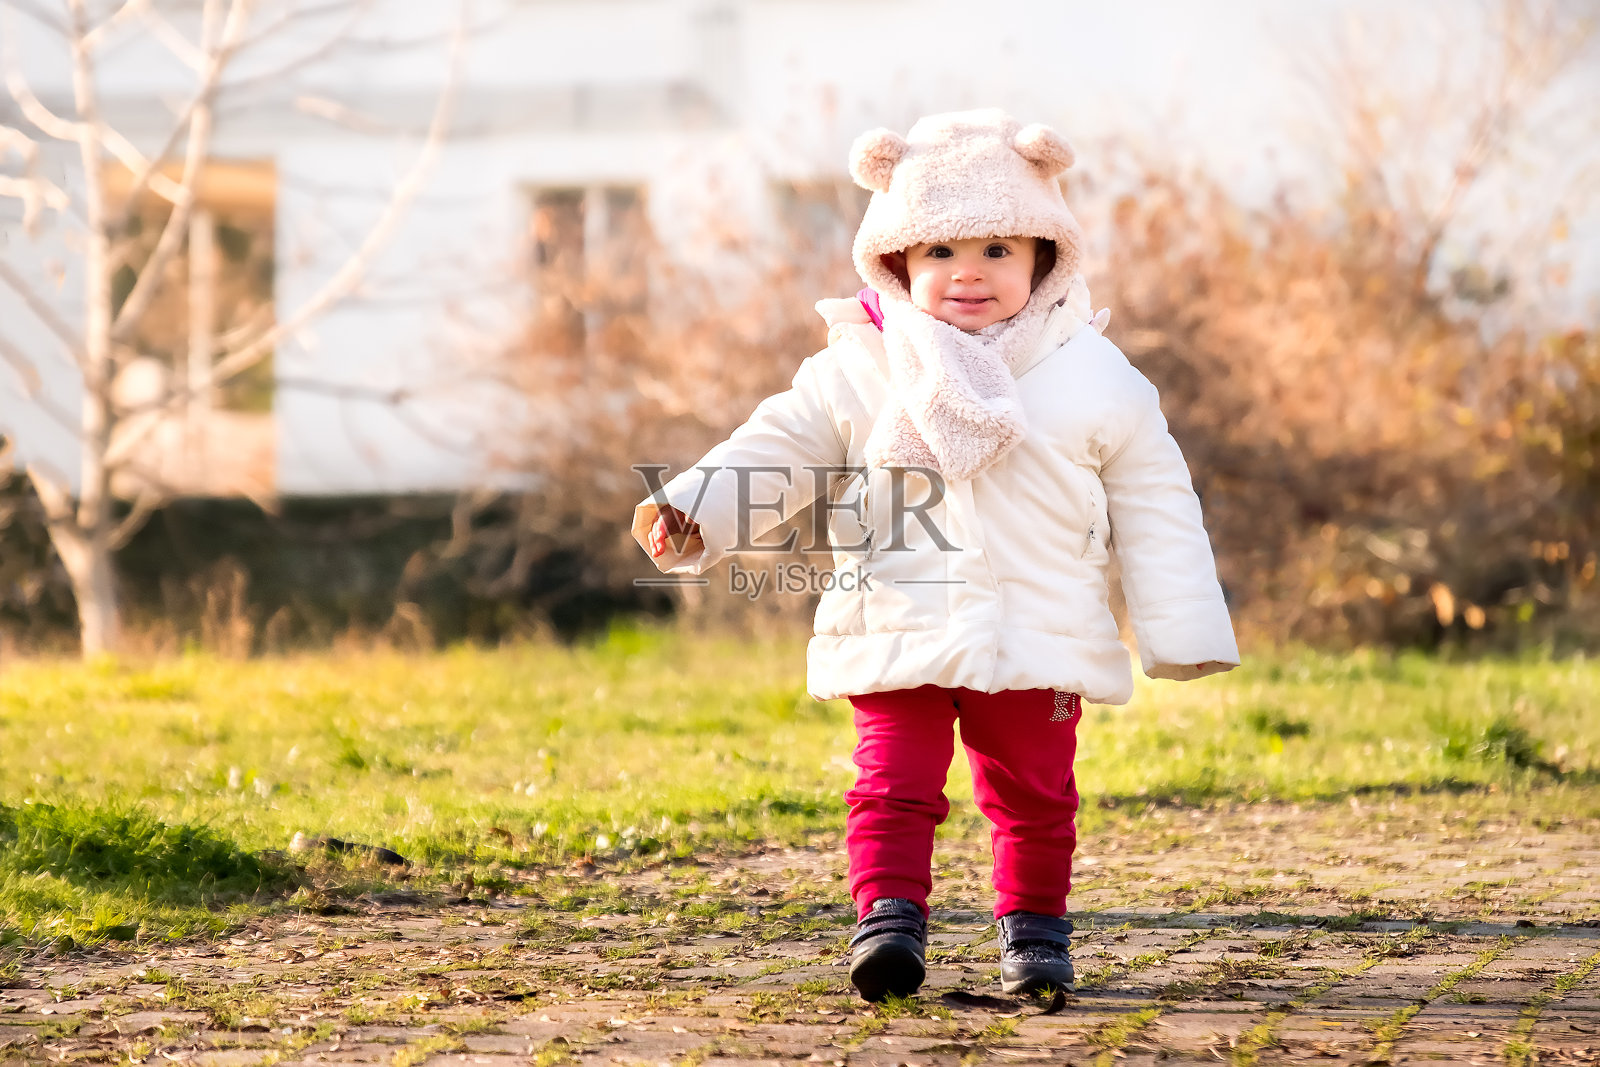 婴儿帽耳朵新生儿行走公园冬装第一步照片摄影图片